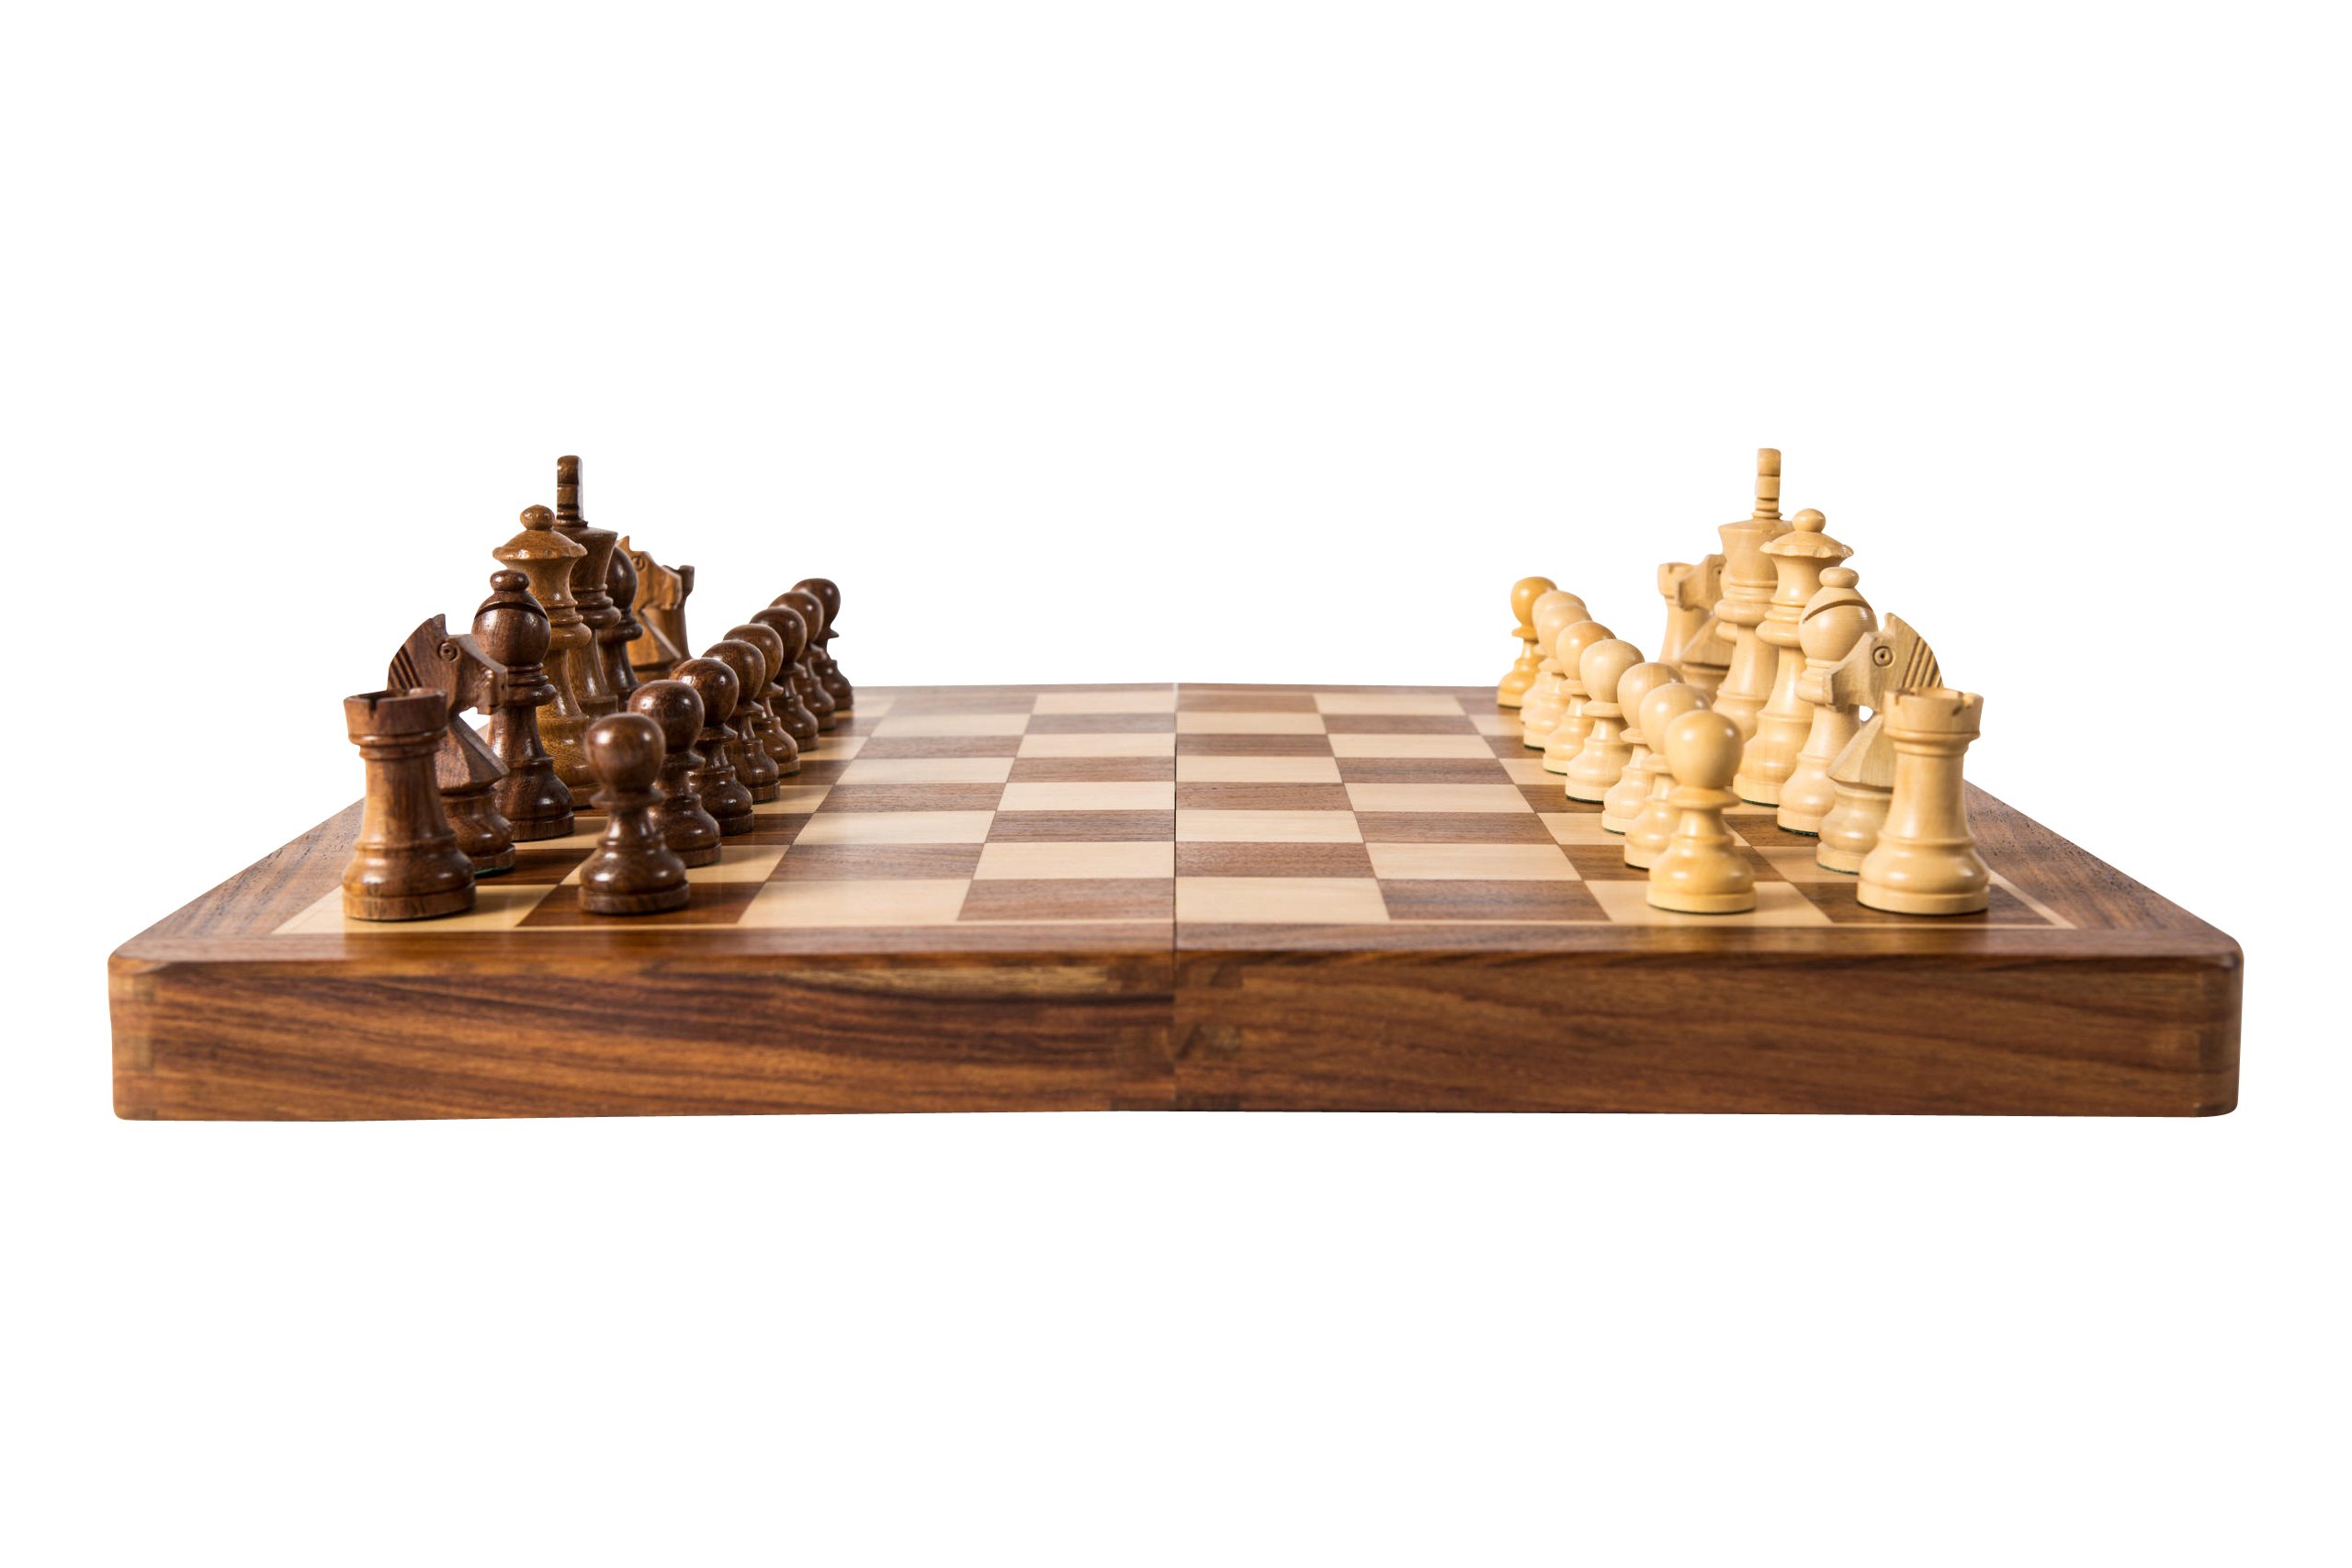 Ist Schach spielen cool oder uncool? - Lokalsport - Teckbote